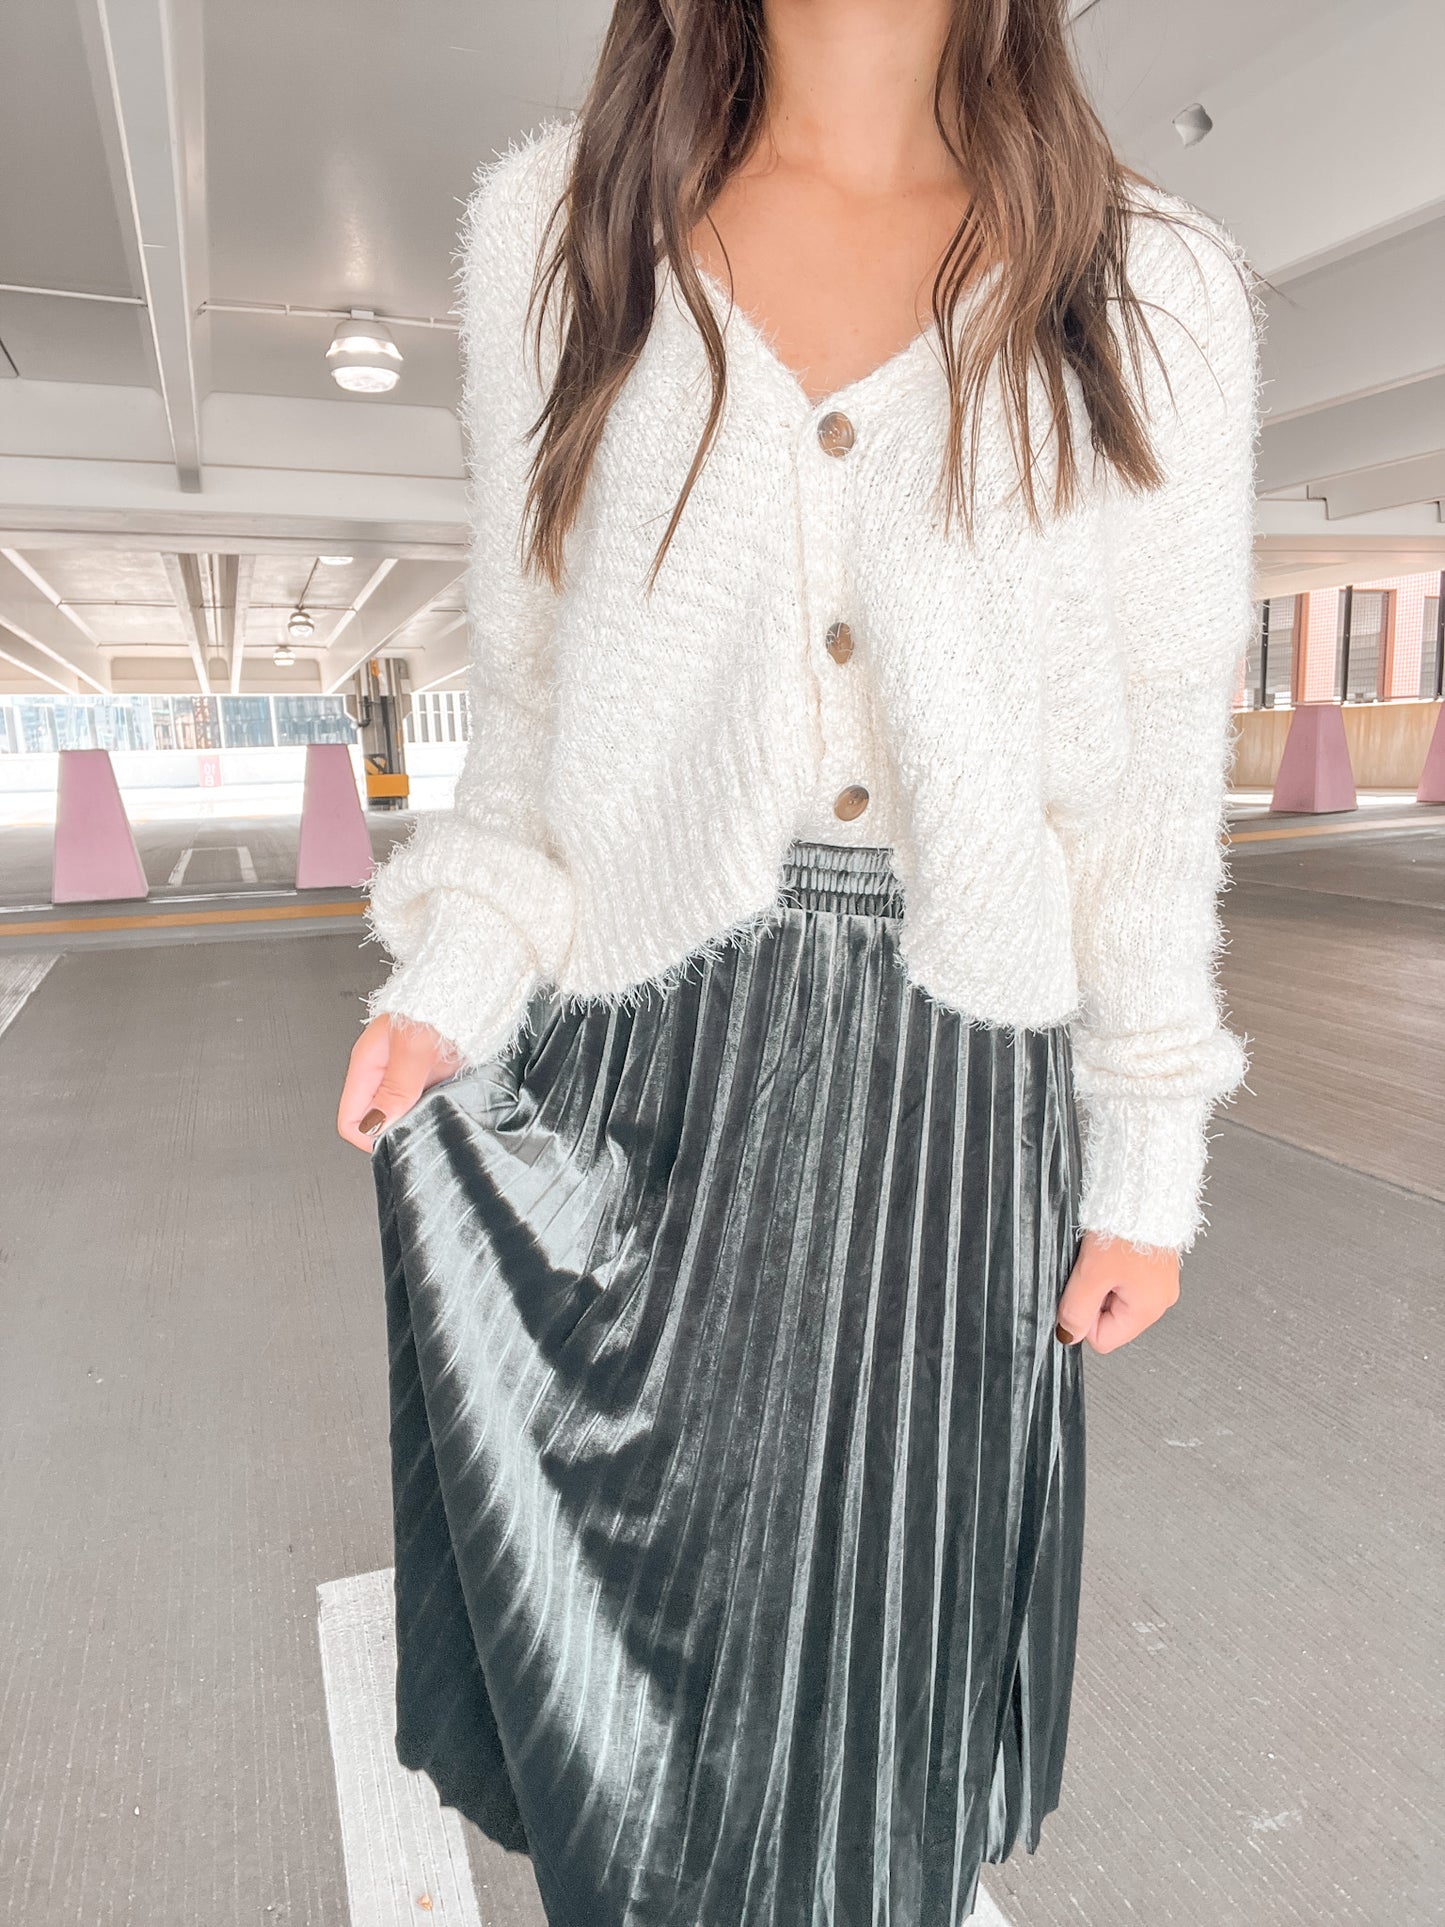 Pleated Velvet Midi Skirt